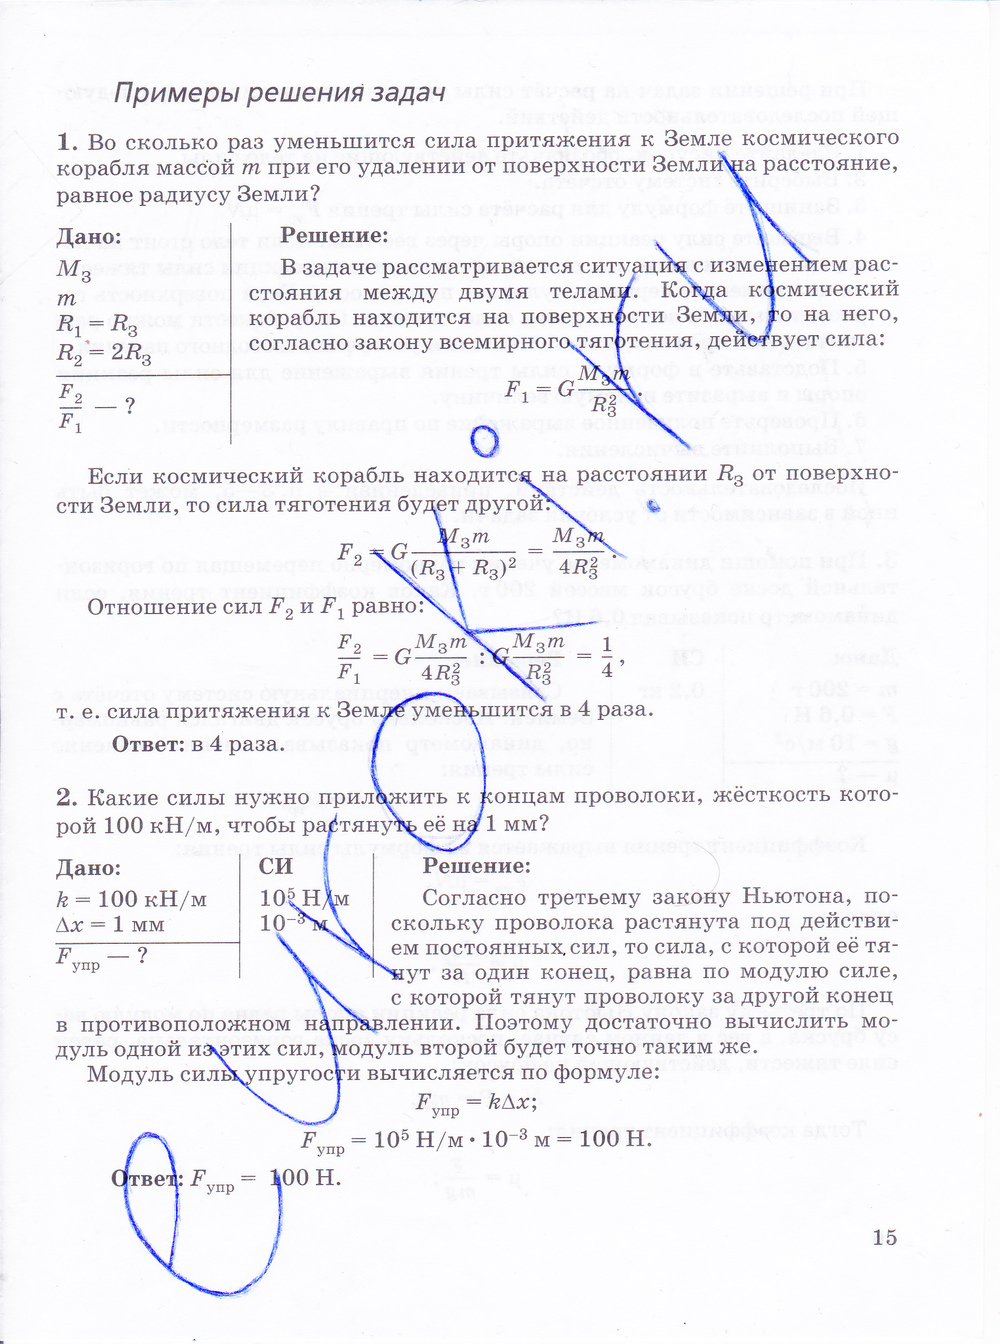 Ответы на лабораторную по физике 9. Физика 10 класс тетрадь Губанов ответы. Контрольные задания по физике 10 класс Губанов ответы. Контрольные задания физика 10 класс Губанов. Лабораторные и контрольные задания по физике 10 класс Губанов.